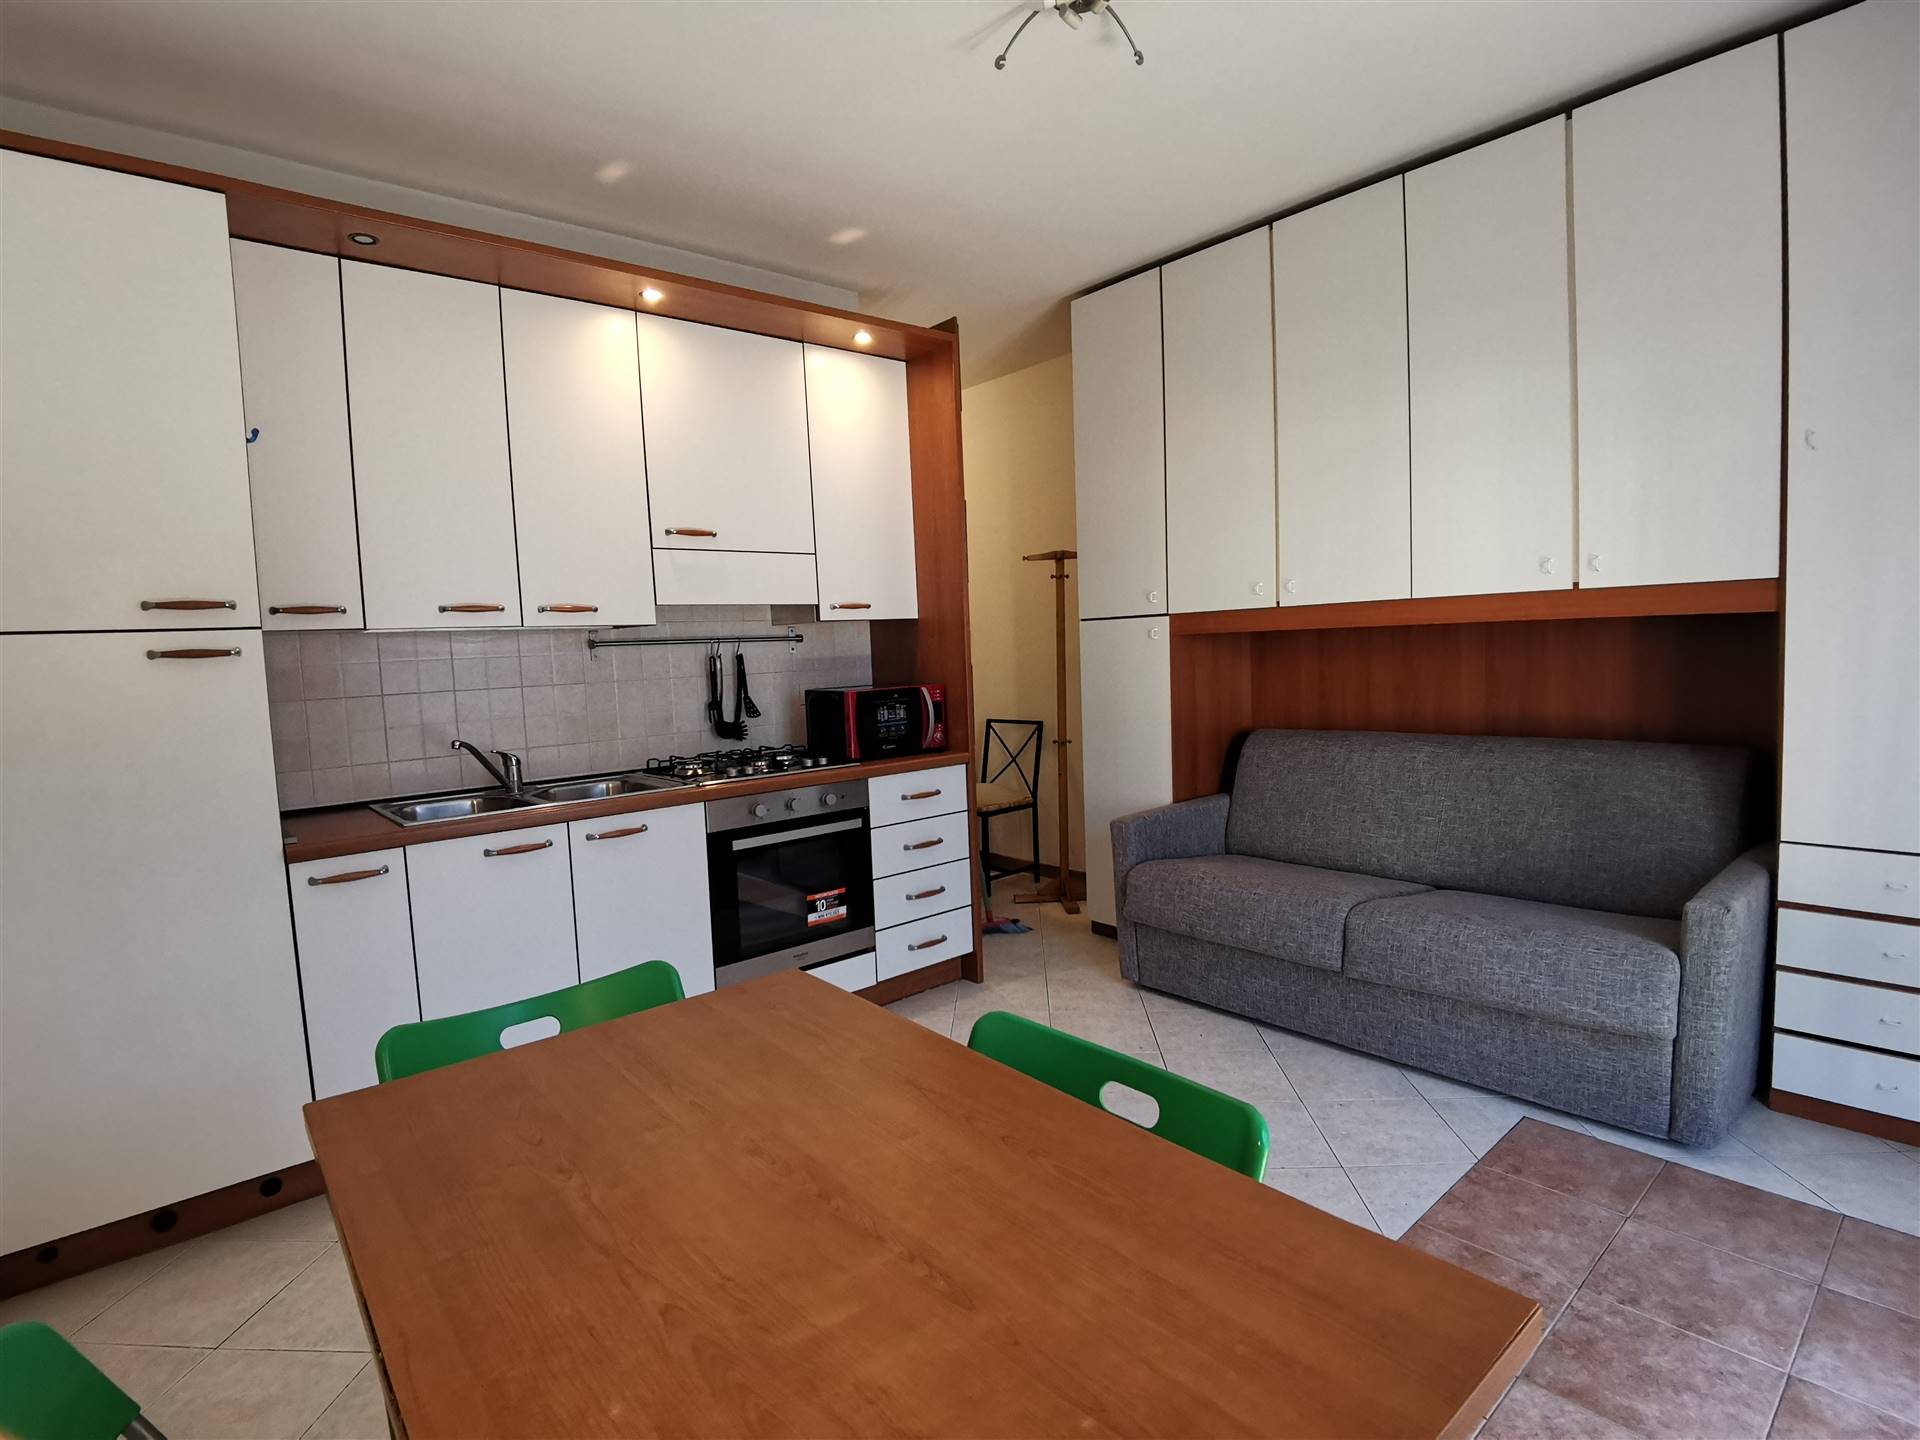 Appartamento in affitto a Sondrio, 1 locali, zona Località: CENTRO, prezzo € 320 | PortaleAgenzieImmobiliari.it